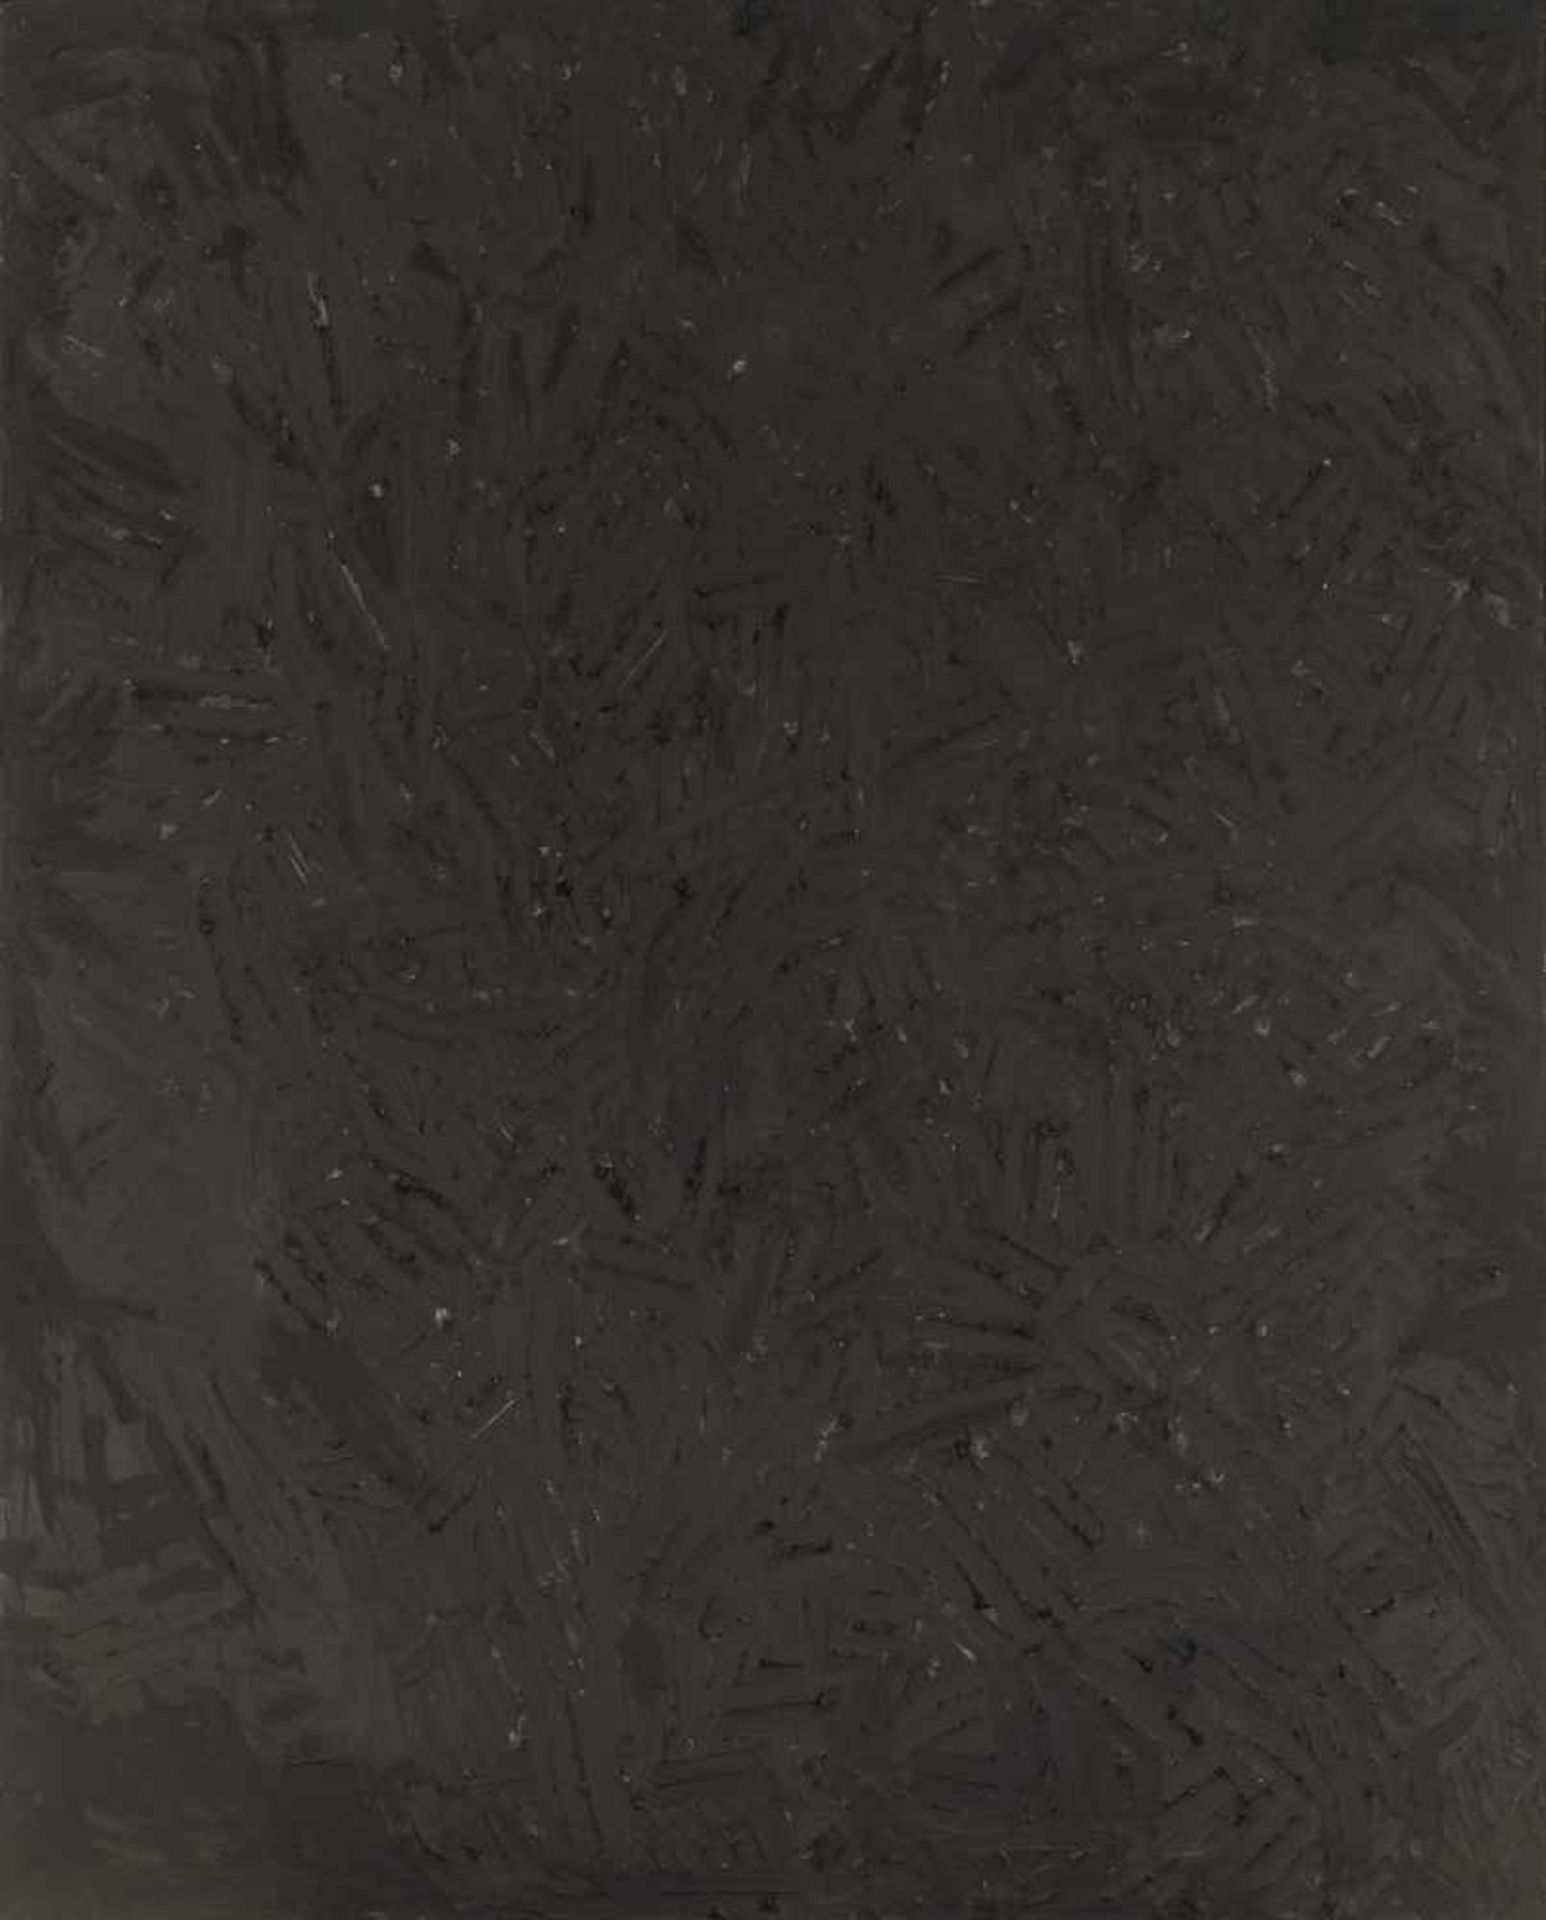 Rudi StanzelLinz 1958 *Ohne Titel / untitledGraphit auf Leinwand / graphite on canvas100,5 x 80